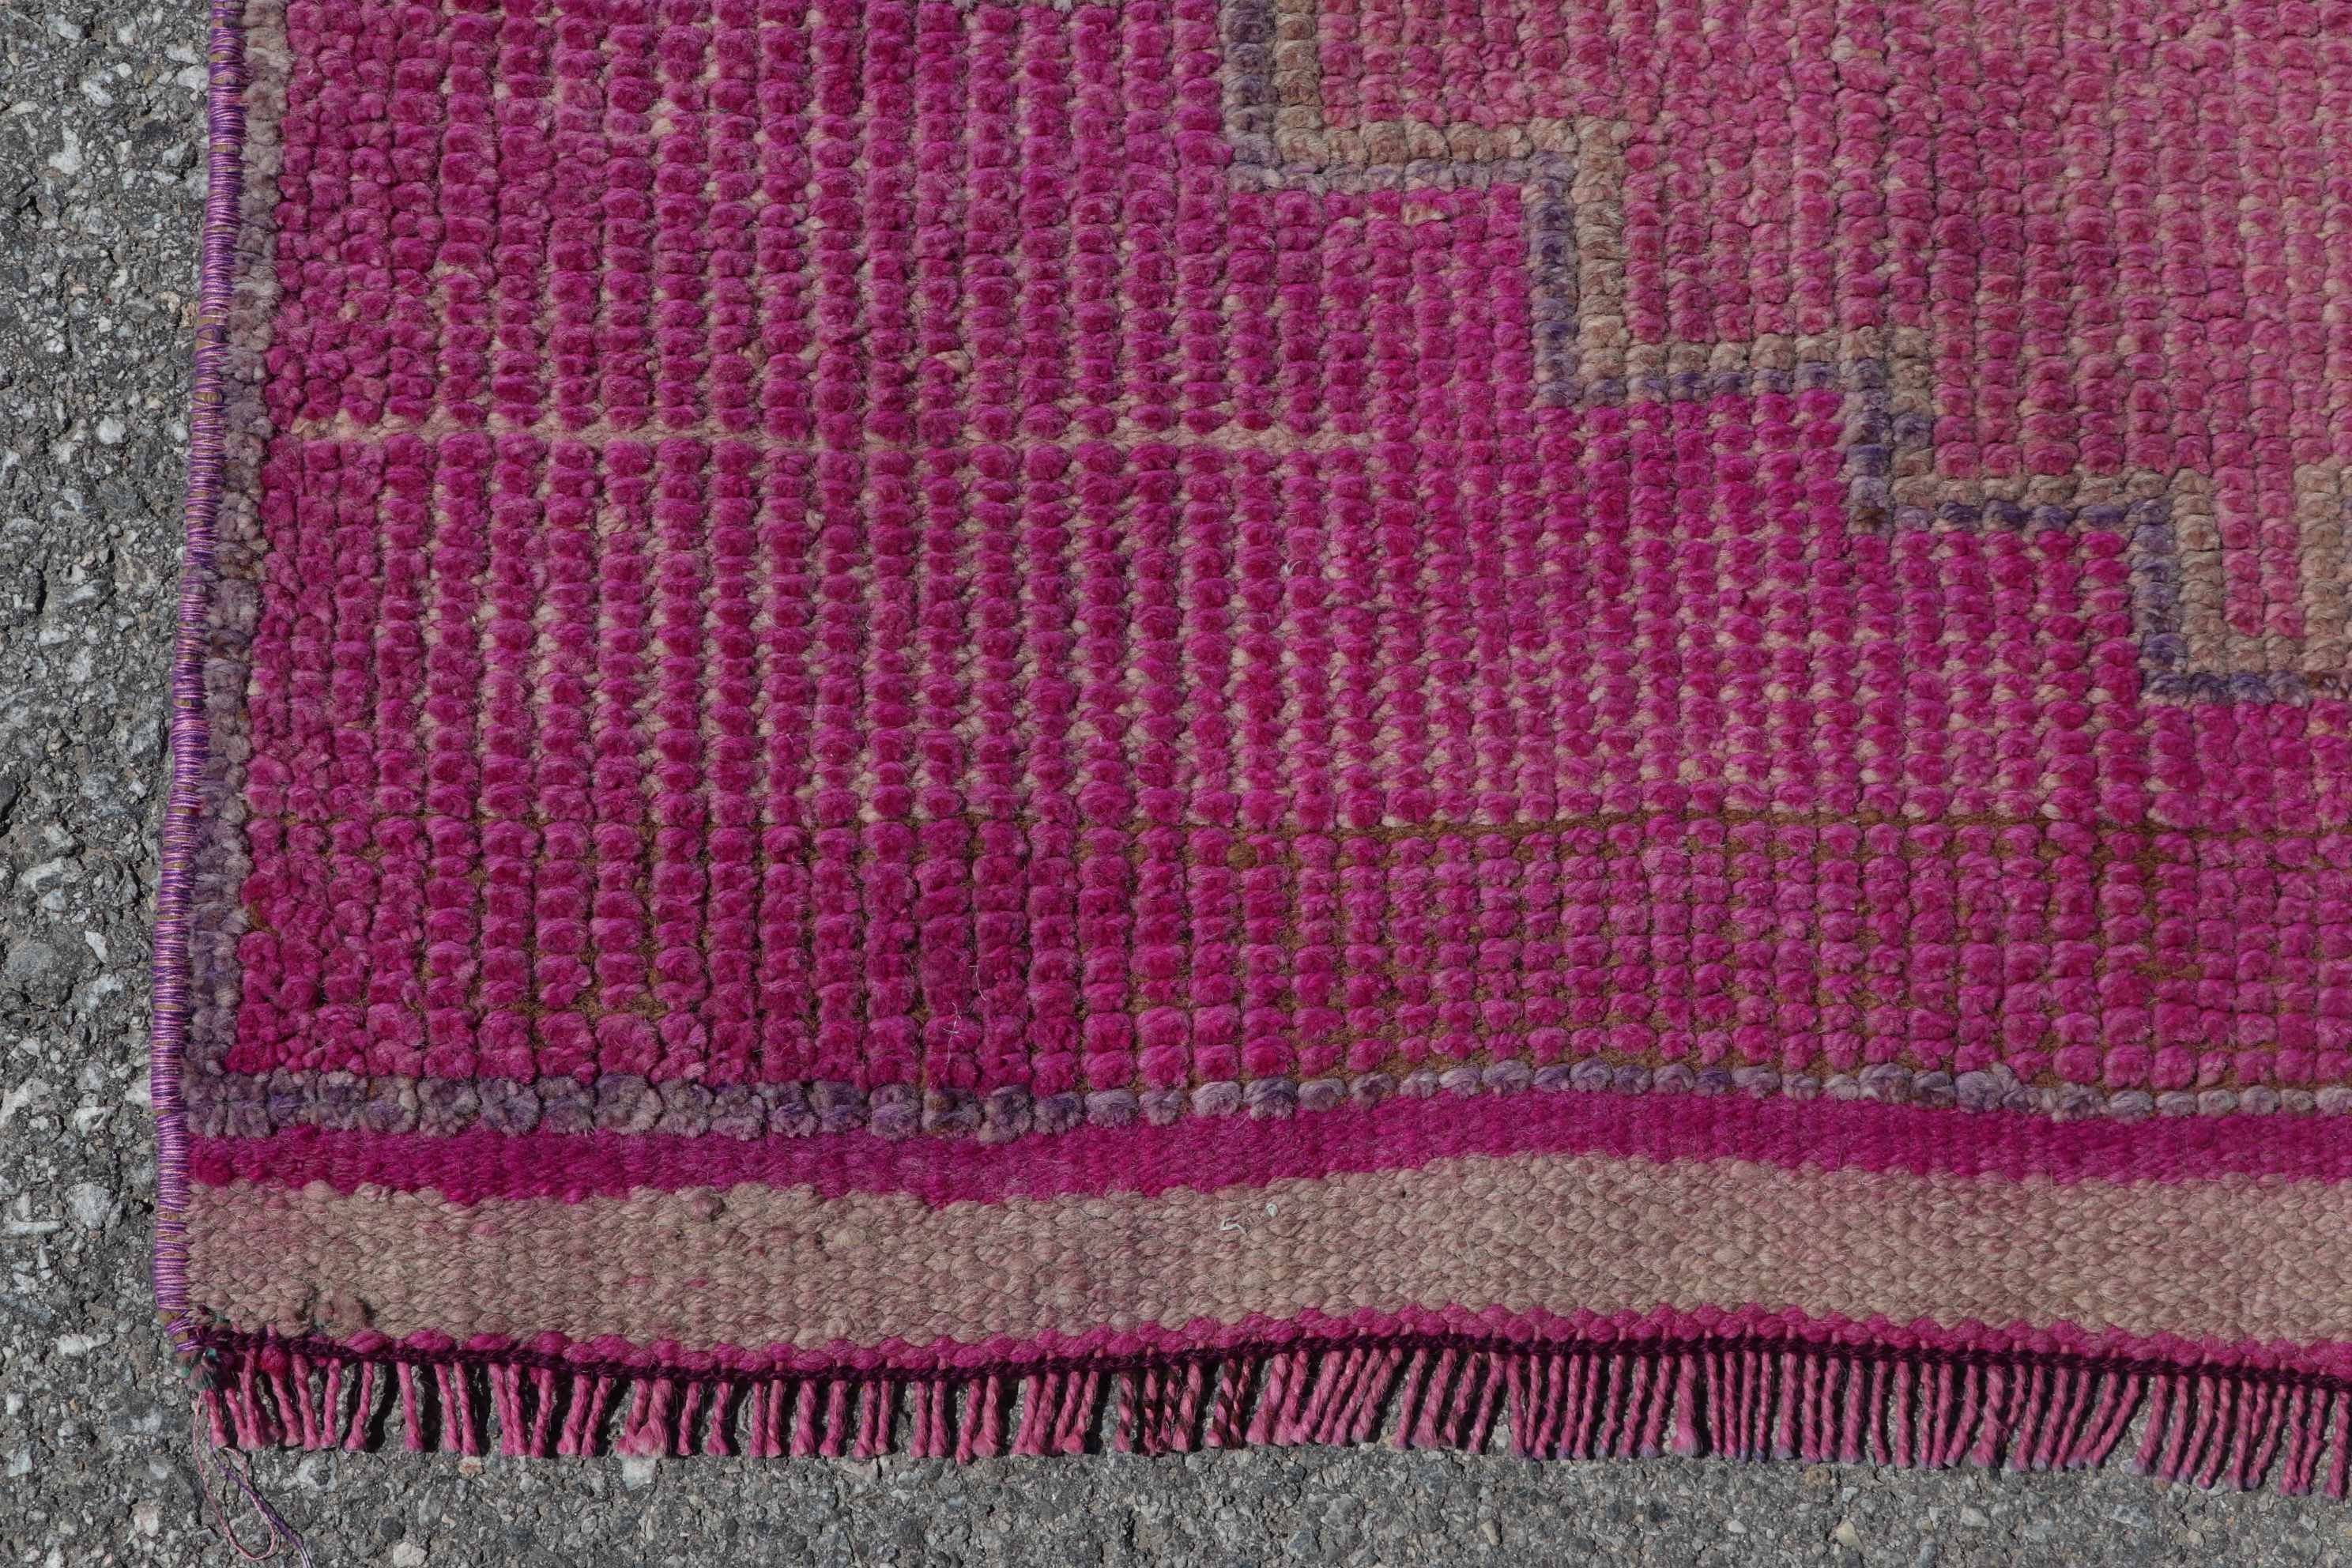 Vintage Rugs, Kitchen Rug, Turkey Rug, Cool Rug, 3.1x10.6 ft Runner Rugs, Bedroom Rugs, Turkish Rug, Pink Moroccan Rugs, Rugs for Corridor